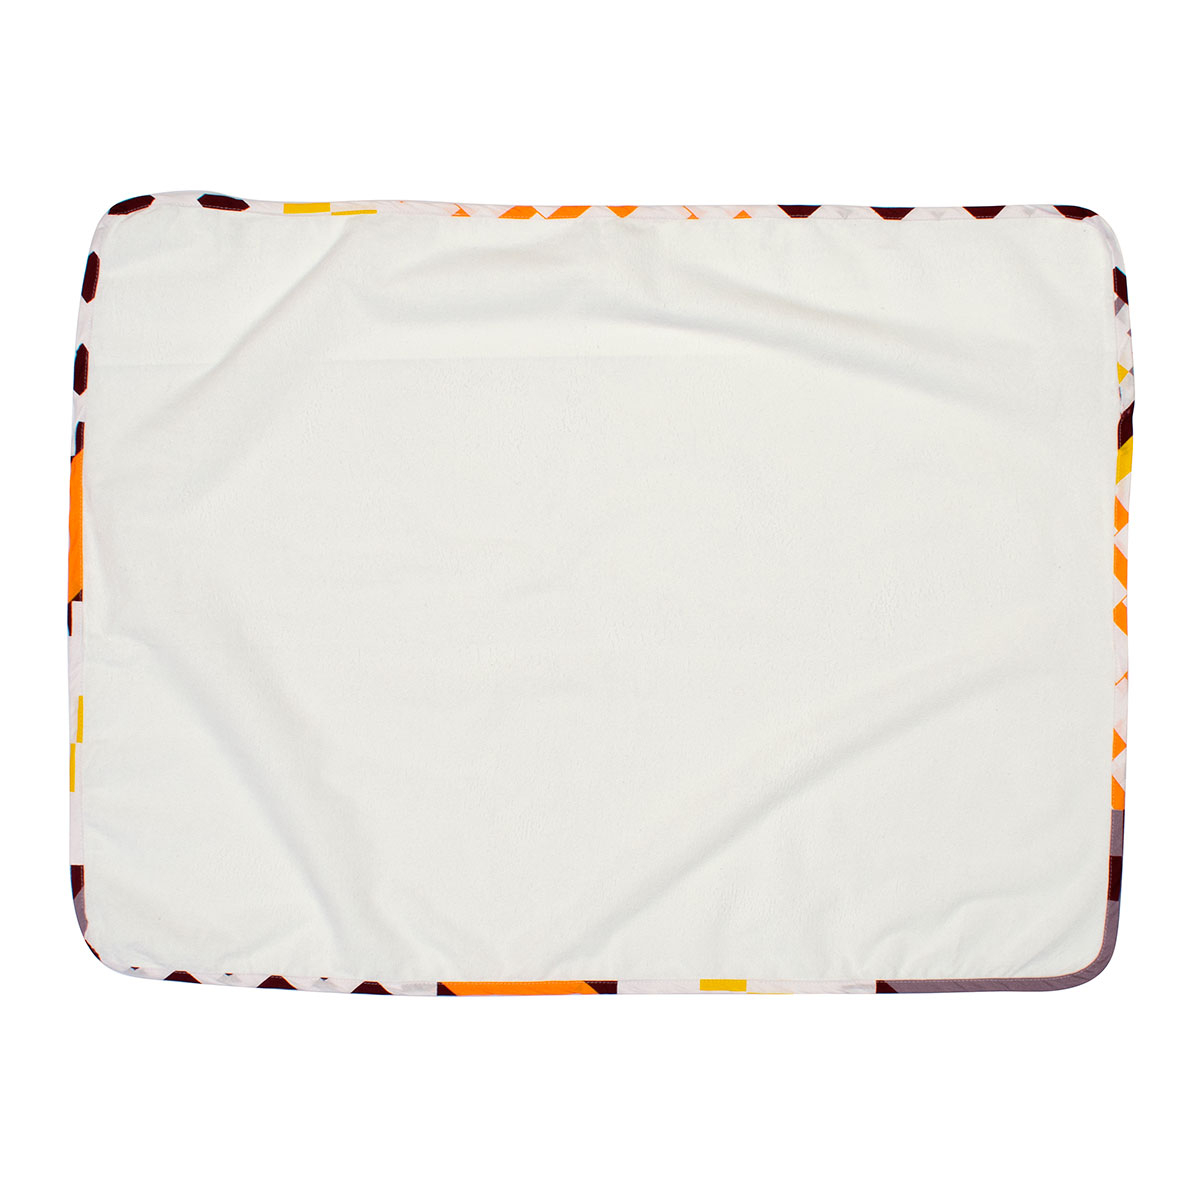 Βρεφικό Σελτεδάκι (67×90) Dimcol Πορτοκαλί-Μπορντώ 117 282651